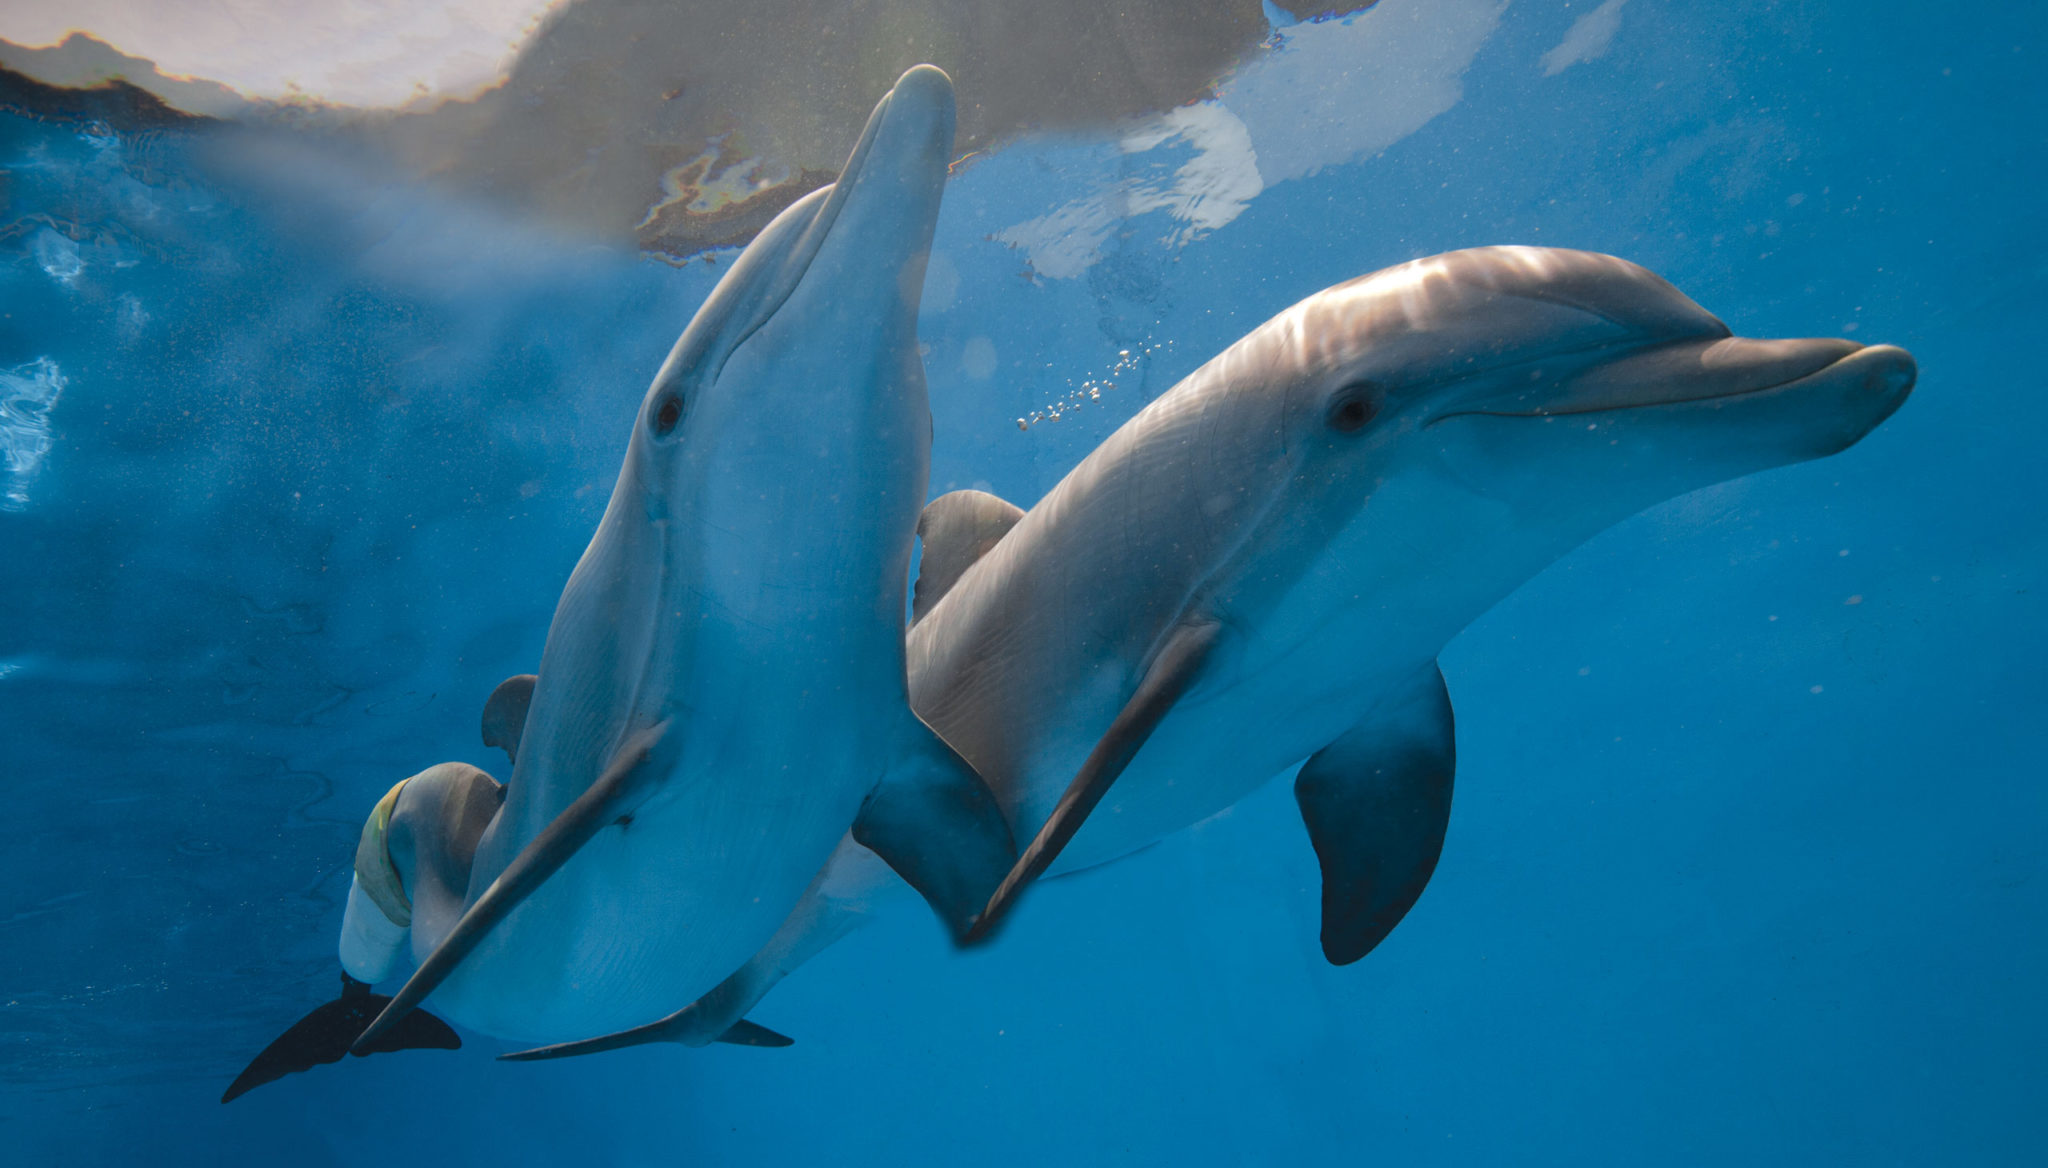 clipart dolphin female shark